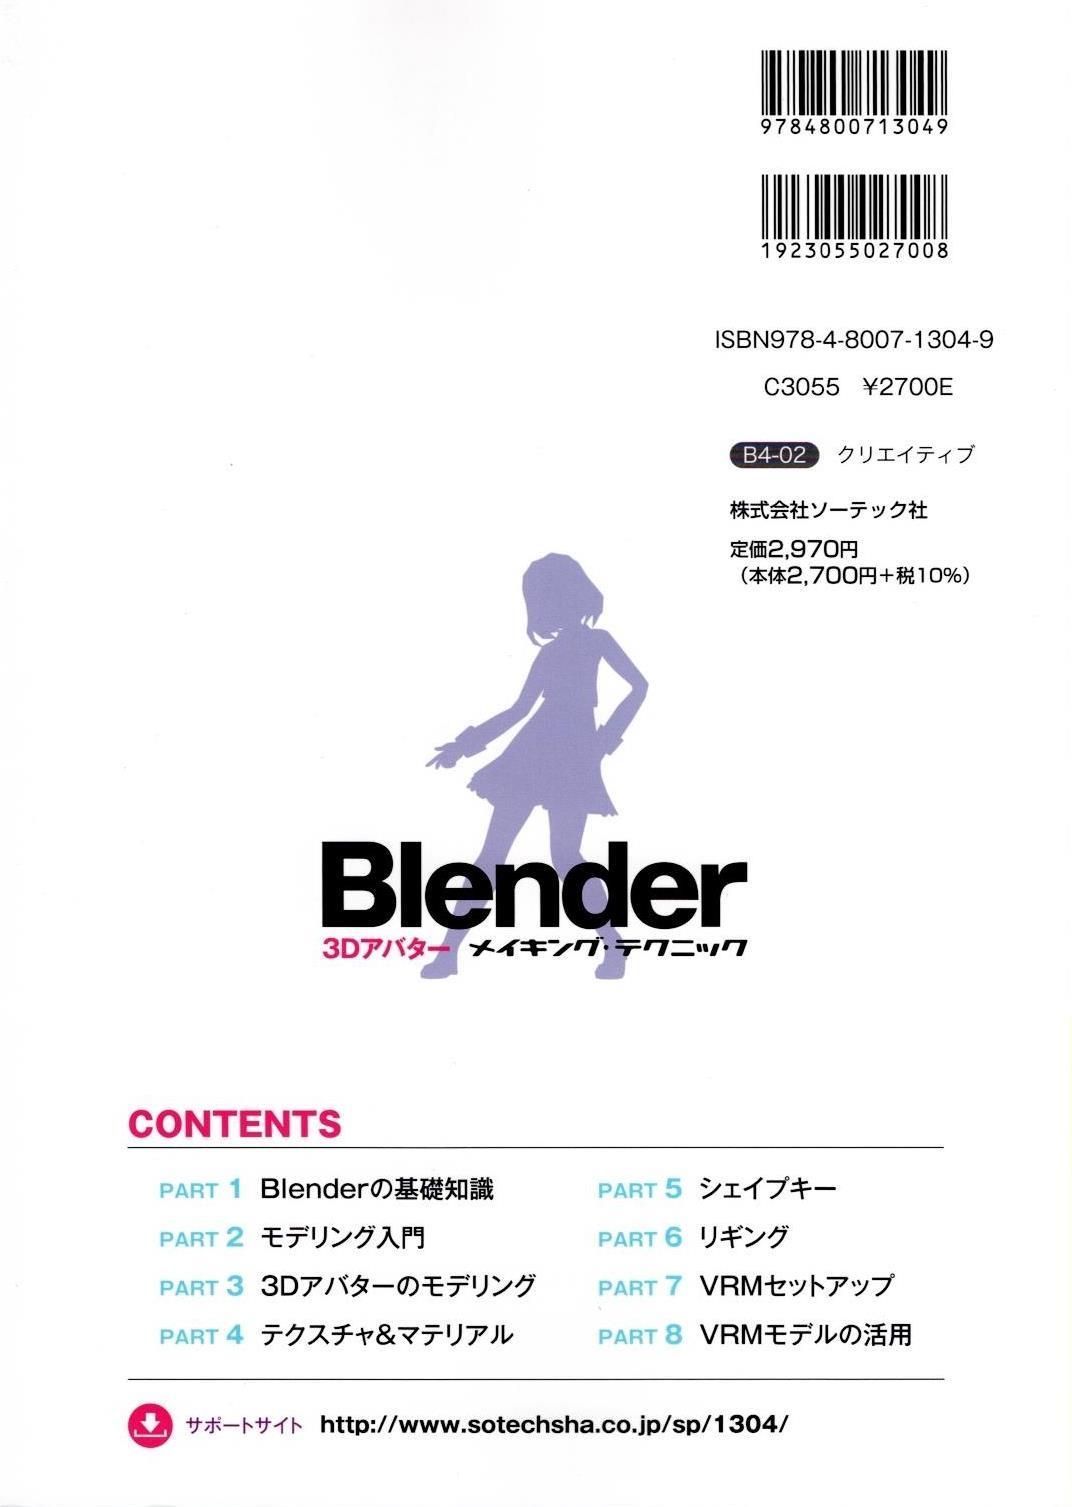 Blender 3Dアバター メイキング・テクニック   d4000